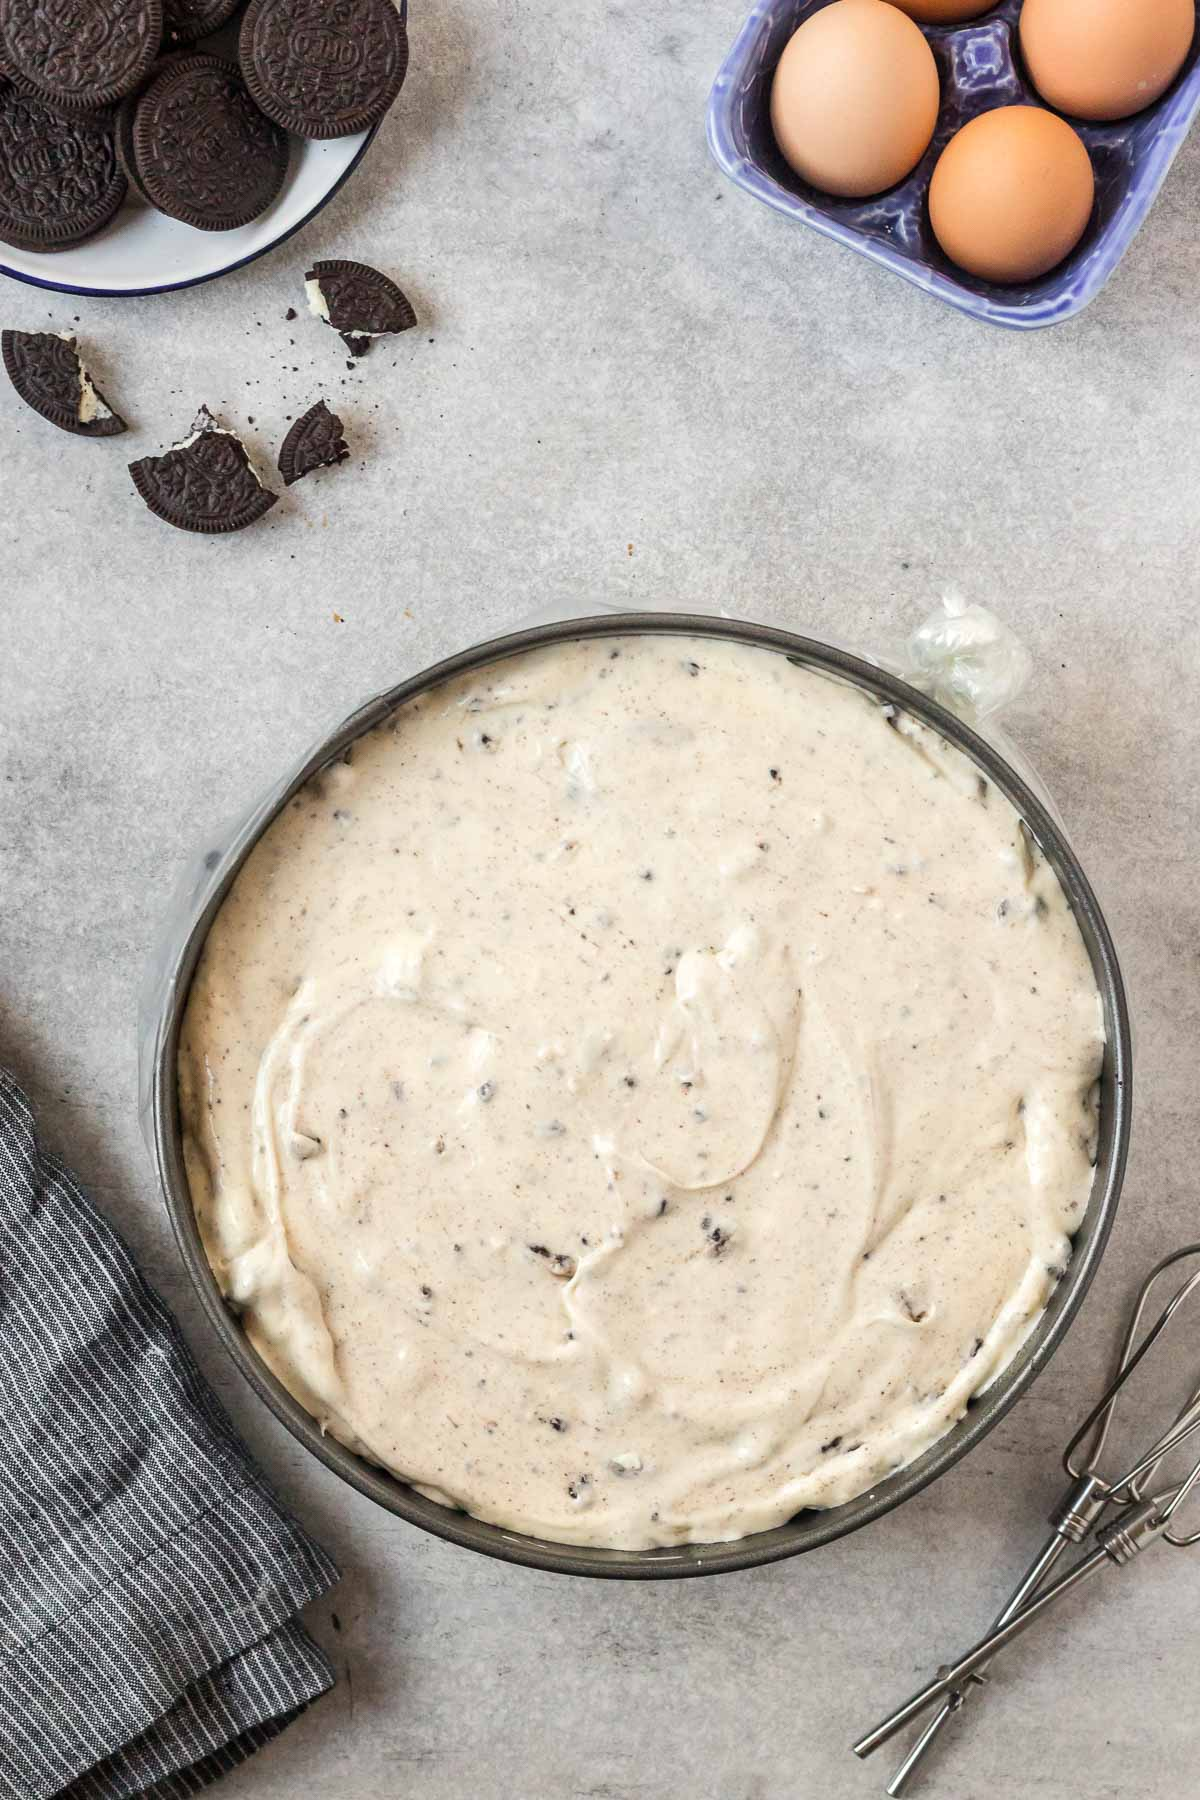 Oreo cheesecake batter spread into springform pan